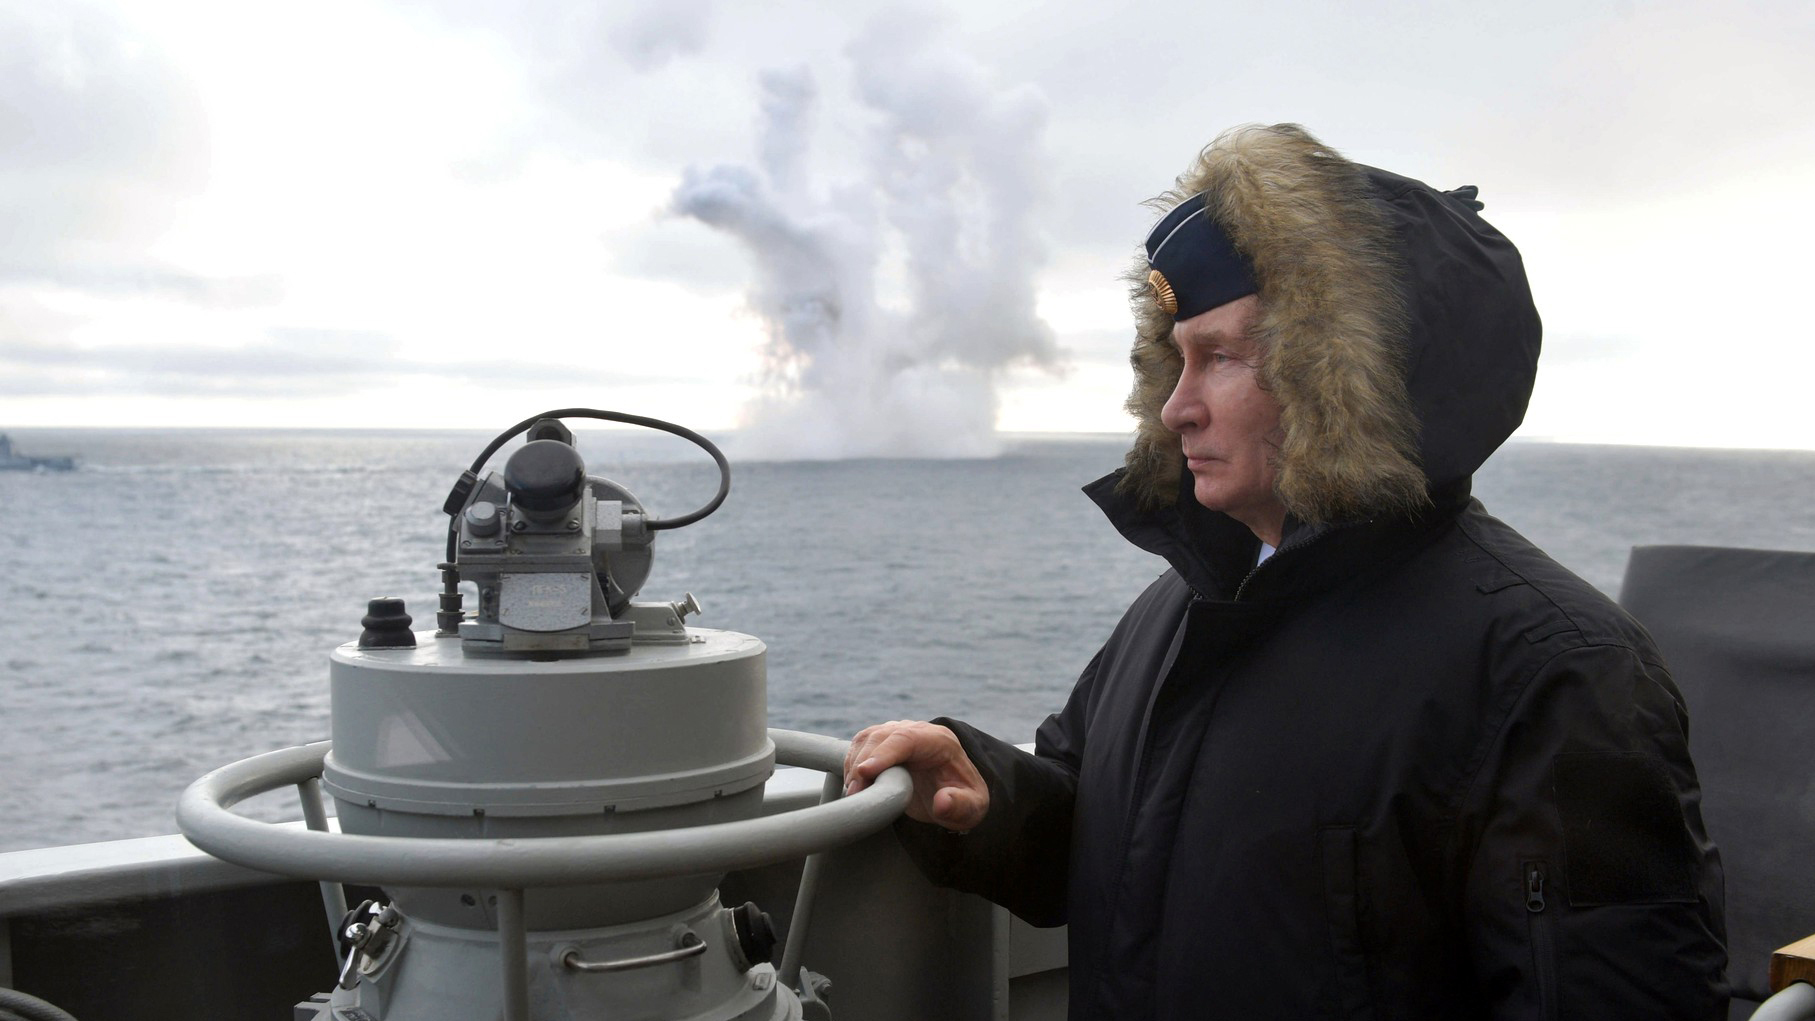 Prezident Putin na palubě křižníku, v pozadí výbuch